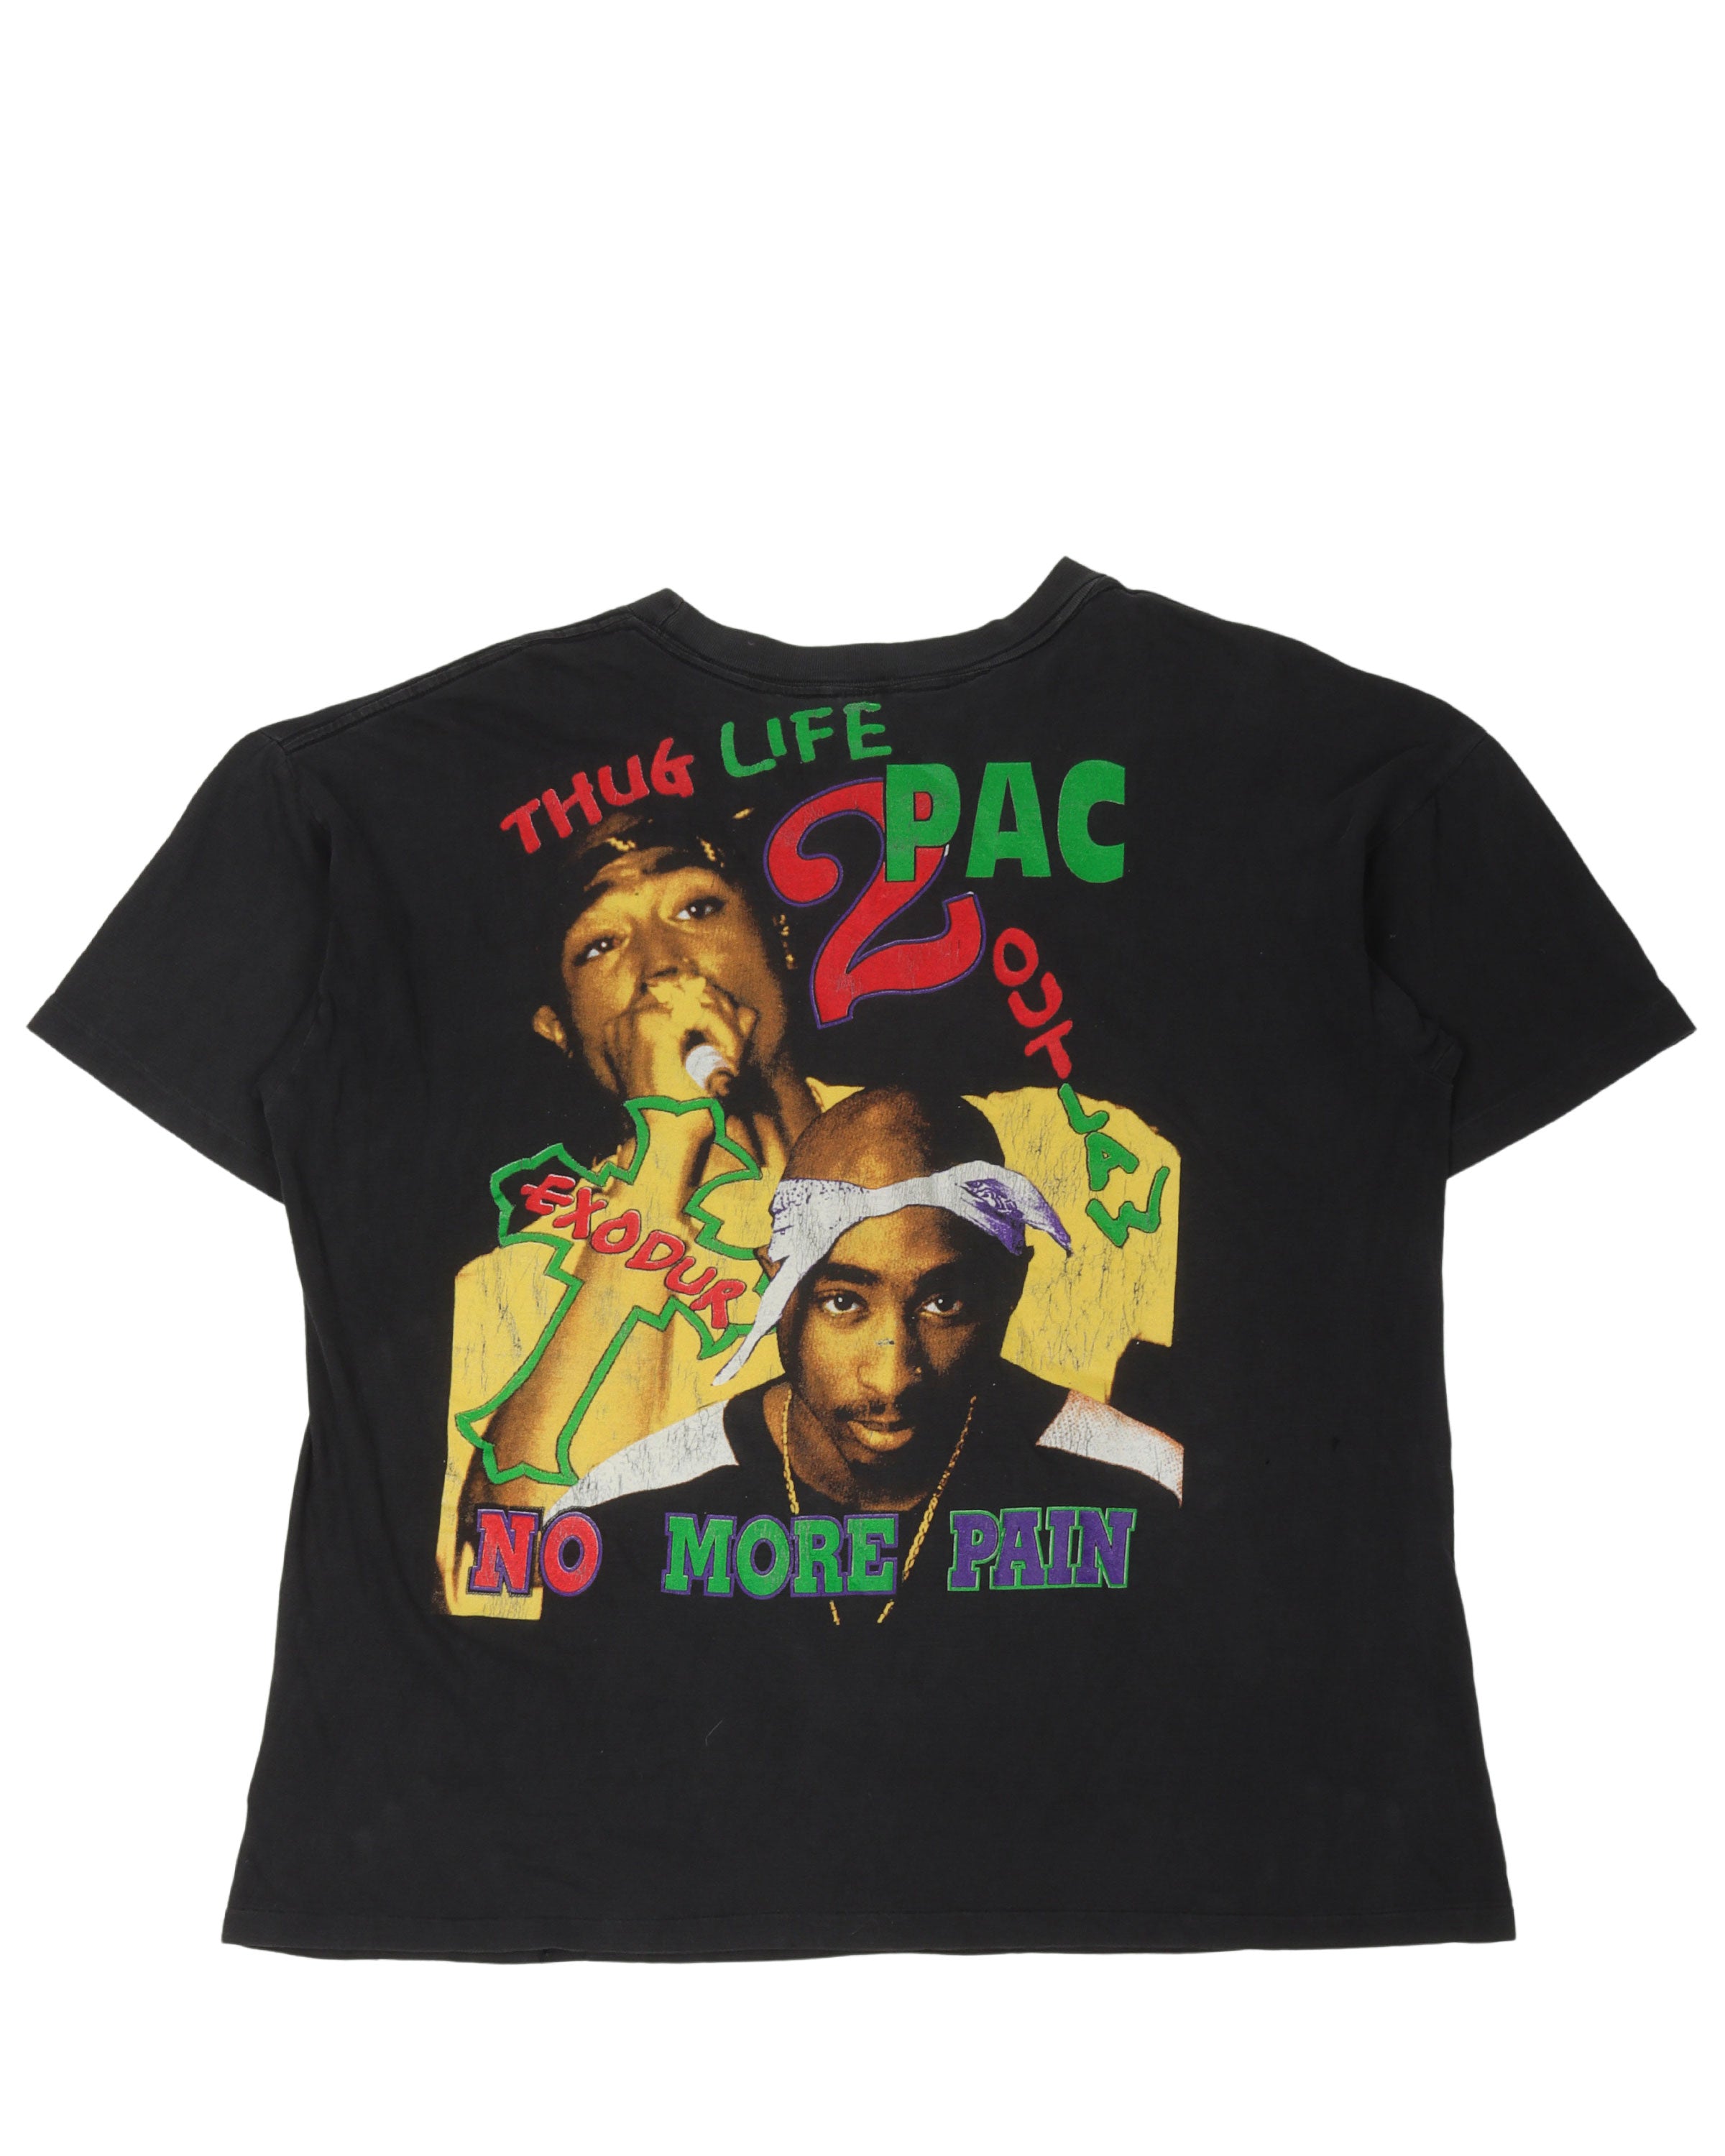 Tupac "How Do U Want It" T-Shirt